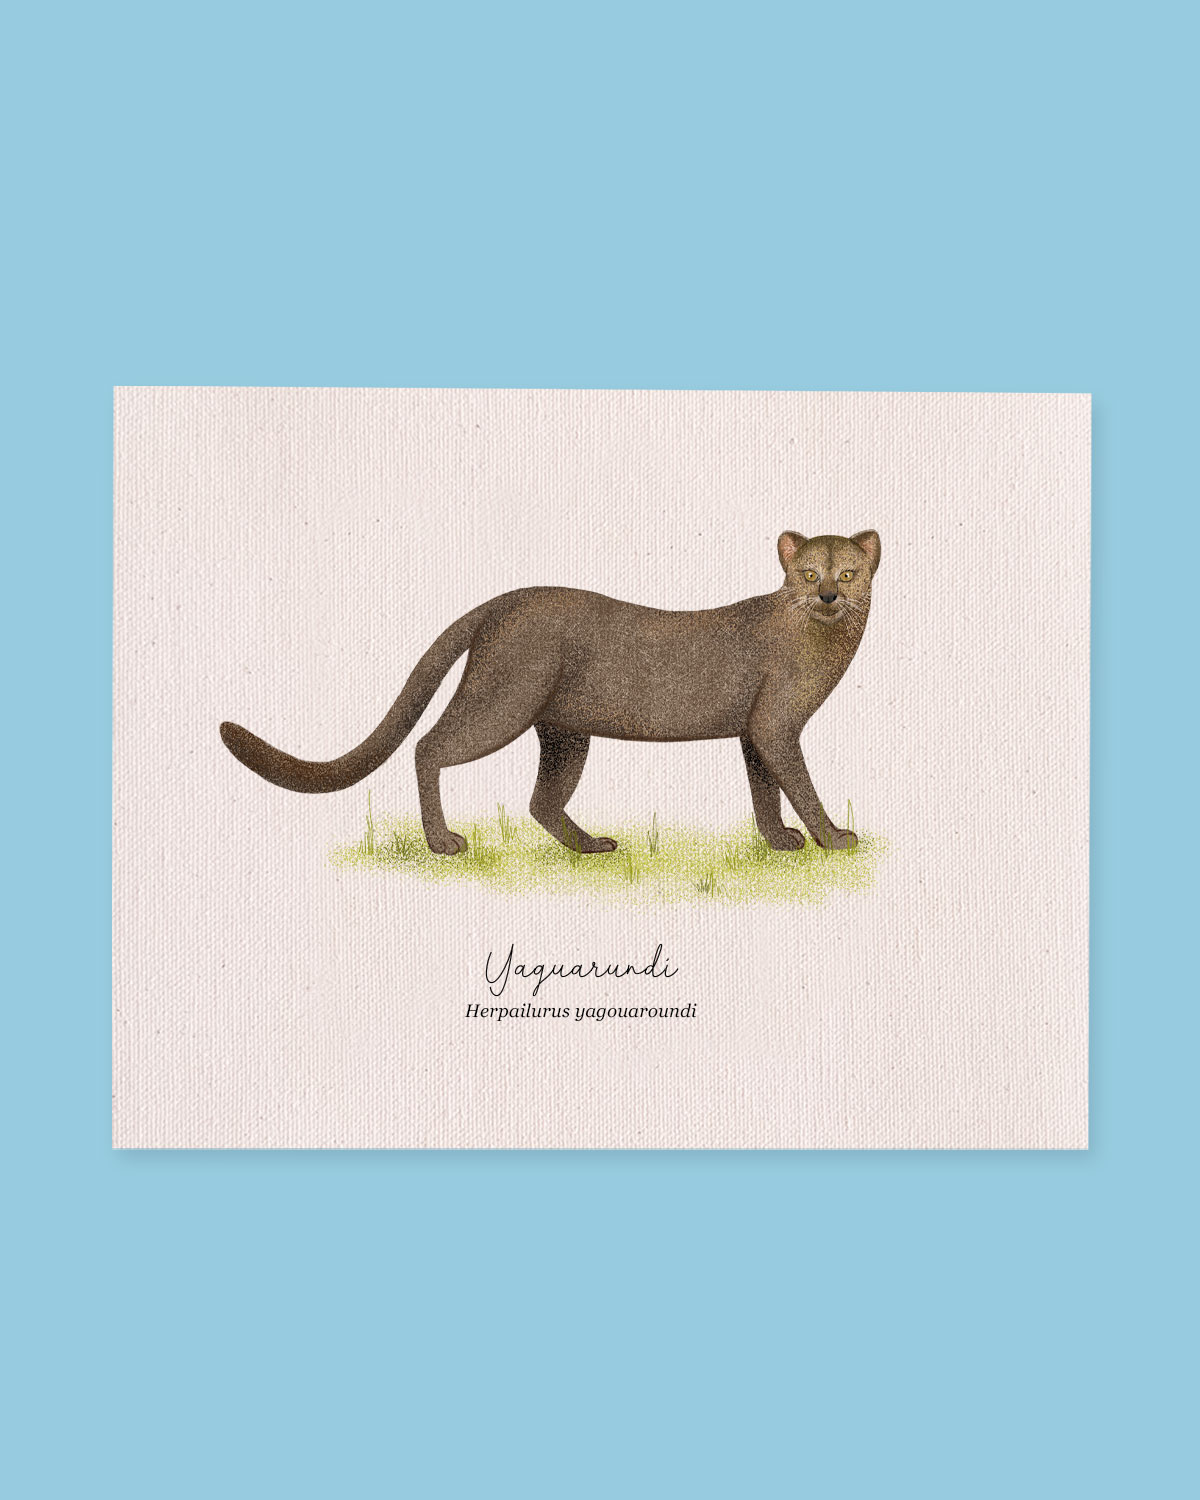 Yaguarundi (Puma yagouaroundi)